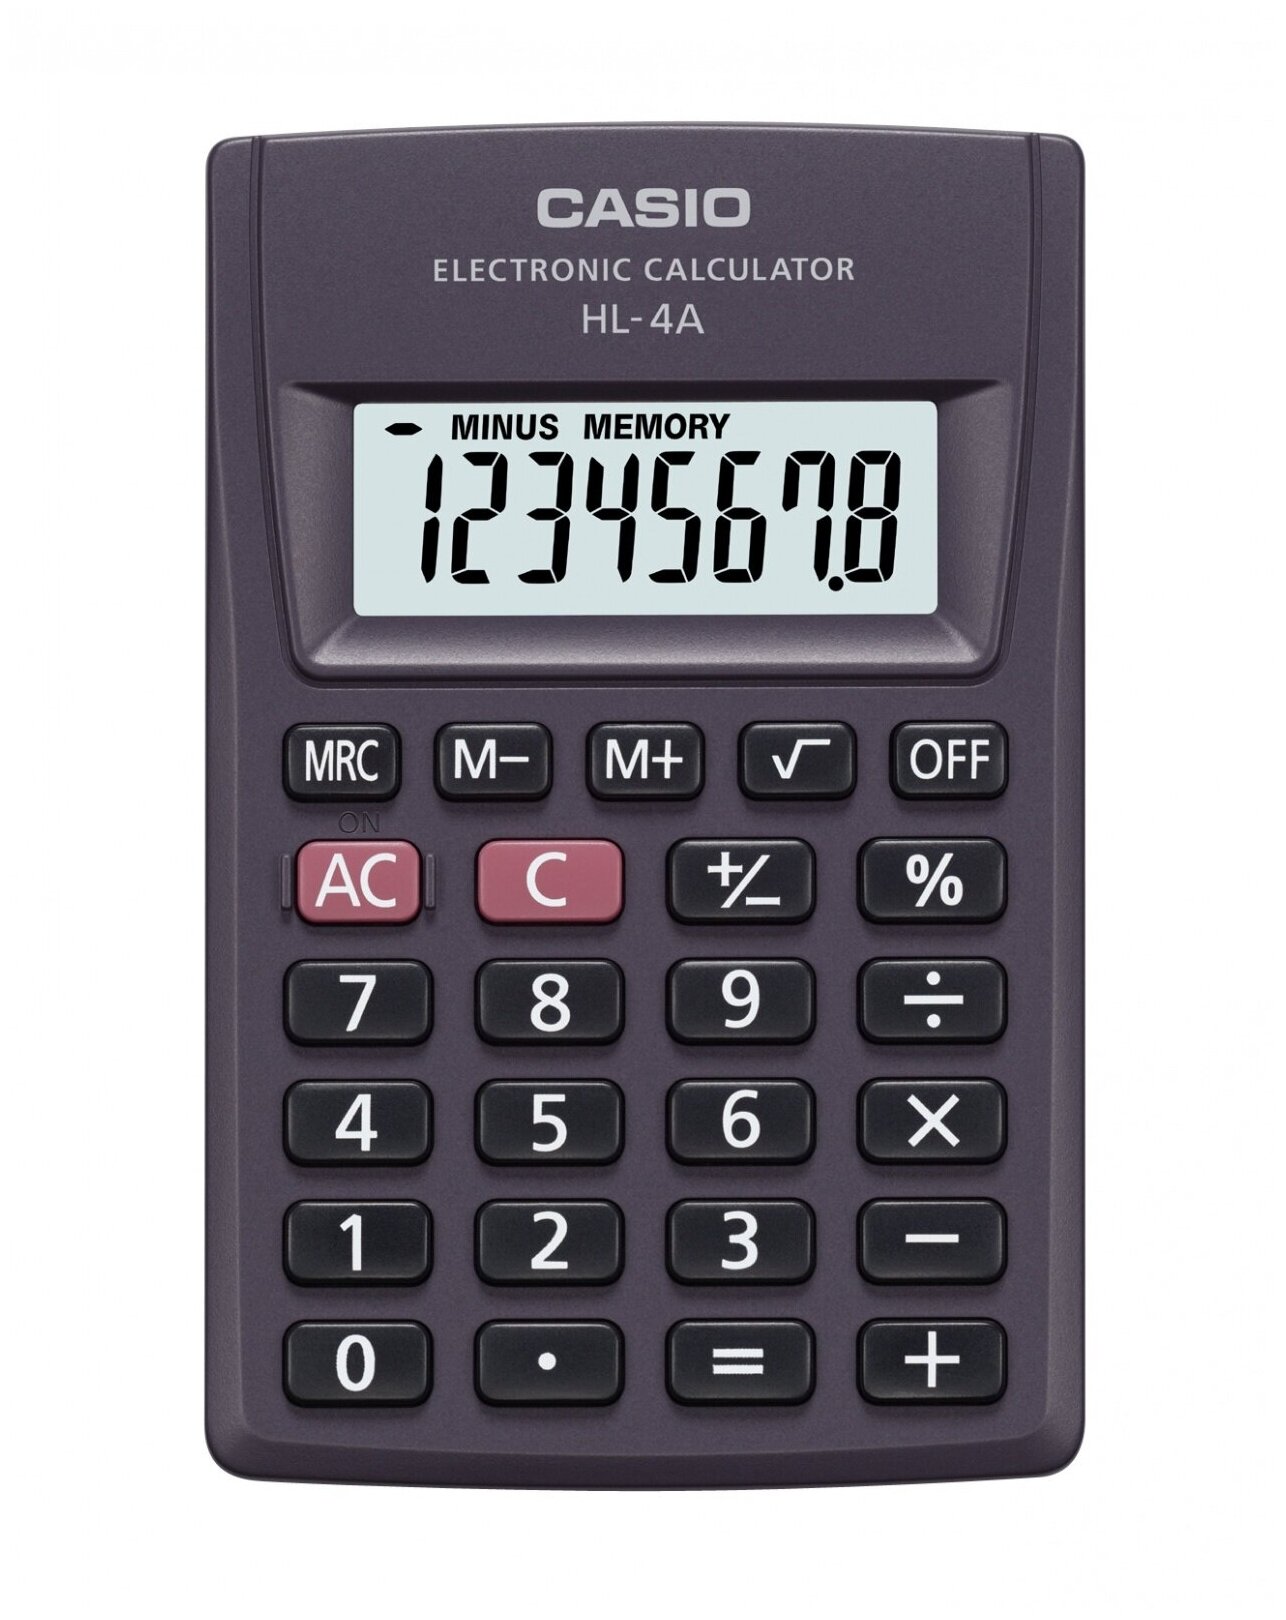 Калькулятор карманный Casio 8 разрядный, крупный дисплей (HL-4A)